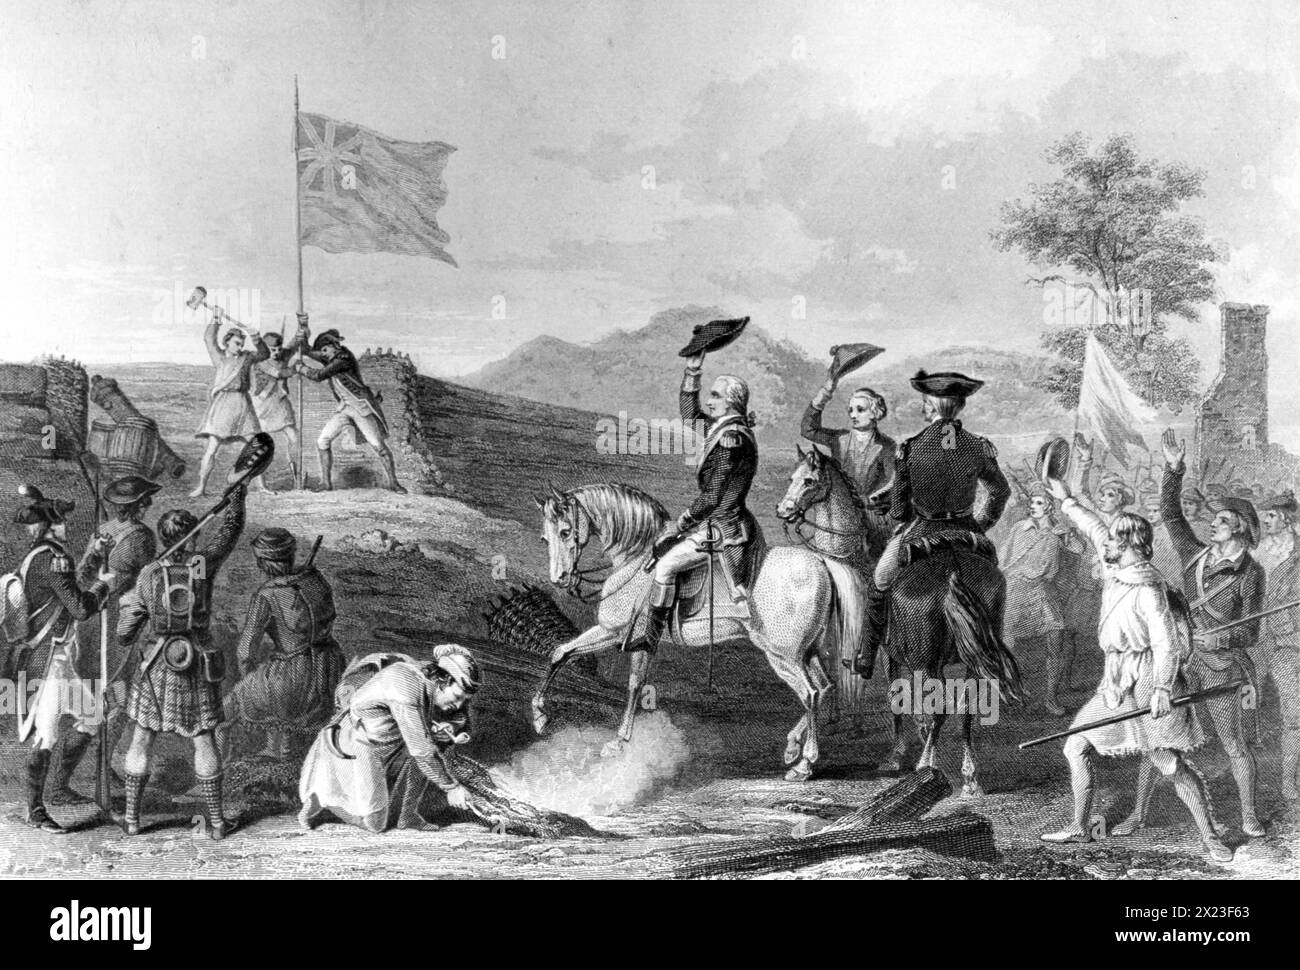 Pittsburgh, Pennsylvanie - gravure représentant le col George Washington levant le drapeau britannique sur les restes du fort Duquesne pendant la guerre française et indienne. 11/25/1758 Banque D'Images